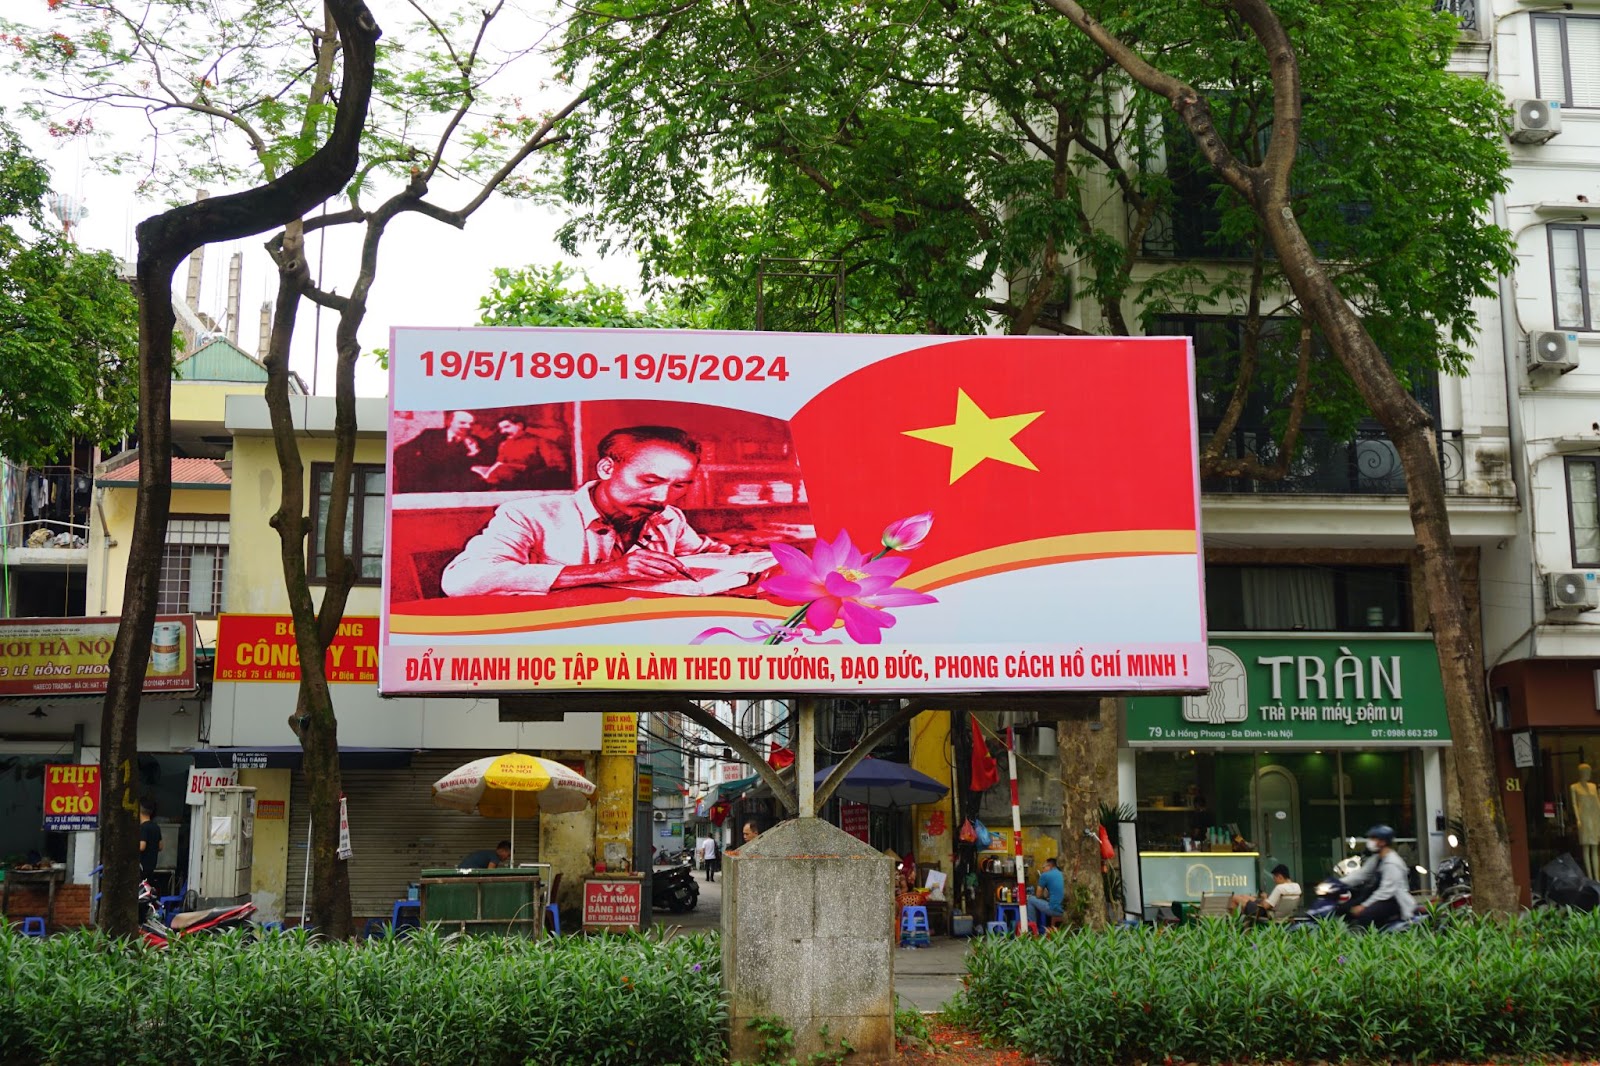 Hà Nội rợp sắc cờ hoa kỷ niệm ngày sinh Chủ tịch Hồ Chí Minh - Ảnh 5.